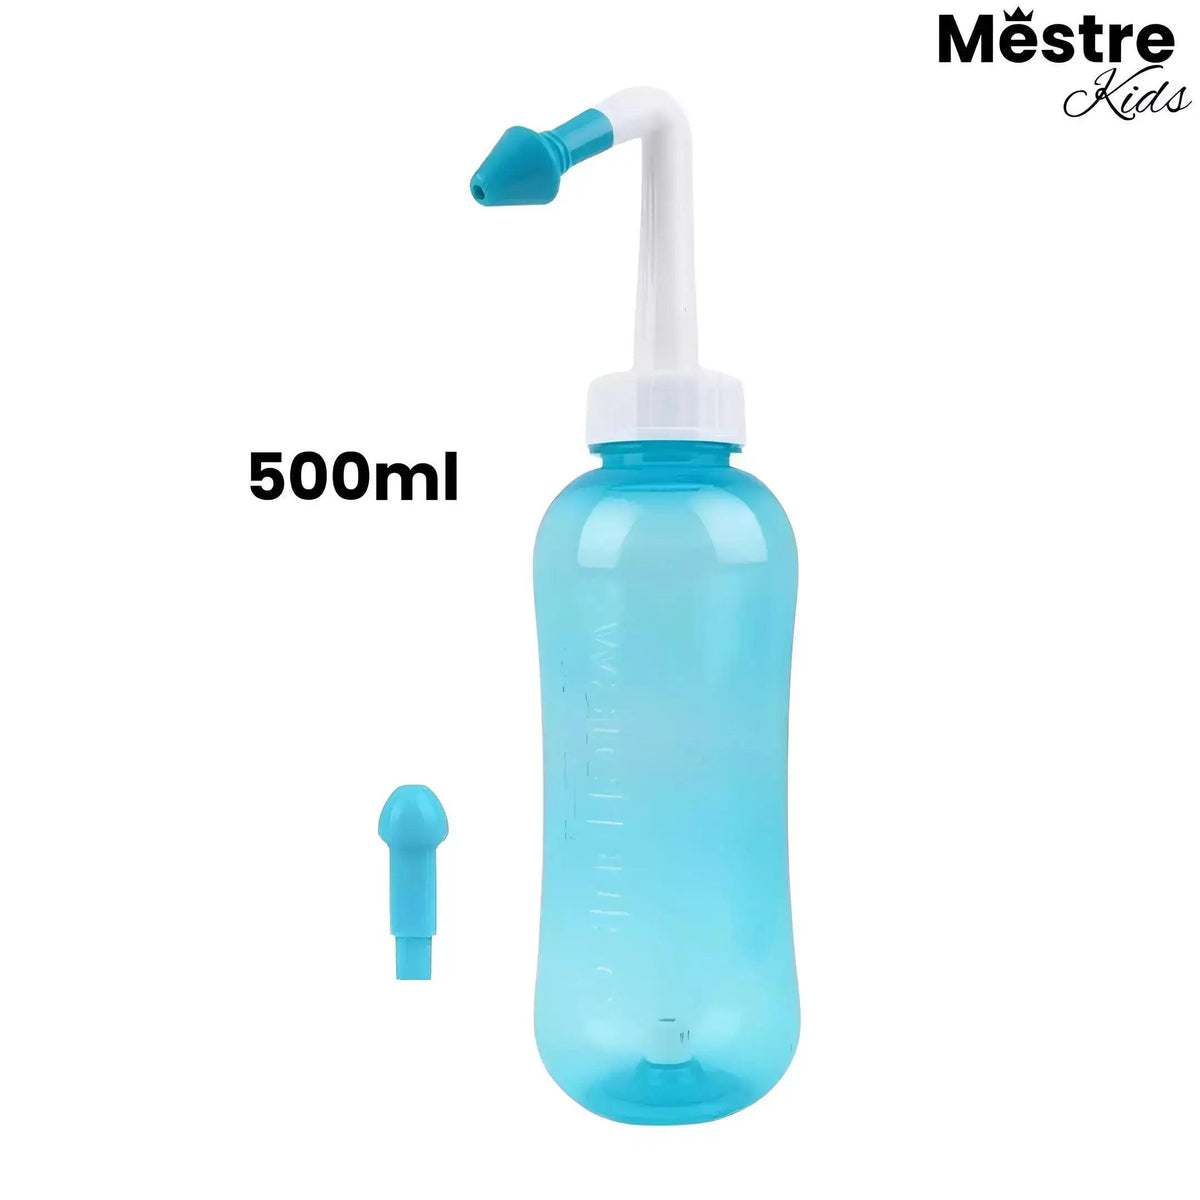 Limpador Nasal Mestre Kids® - Eficiente irrigação e lavagem - Mestre Kids